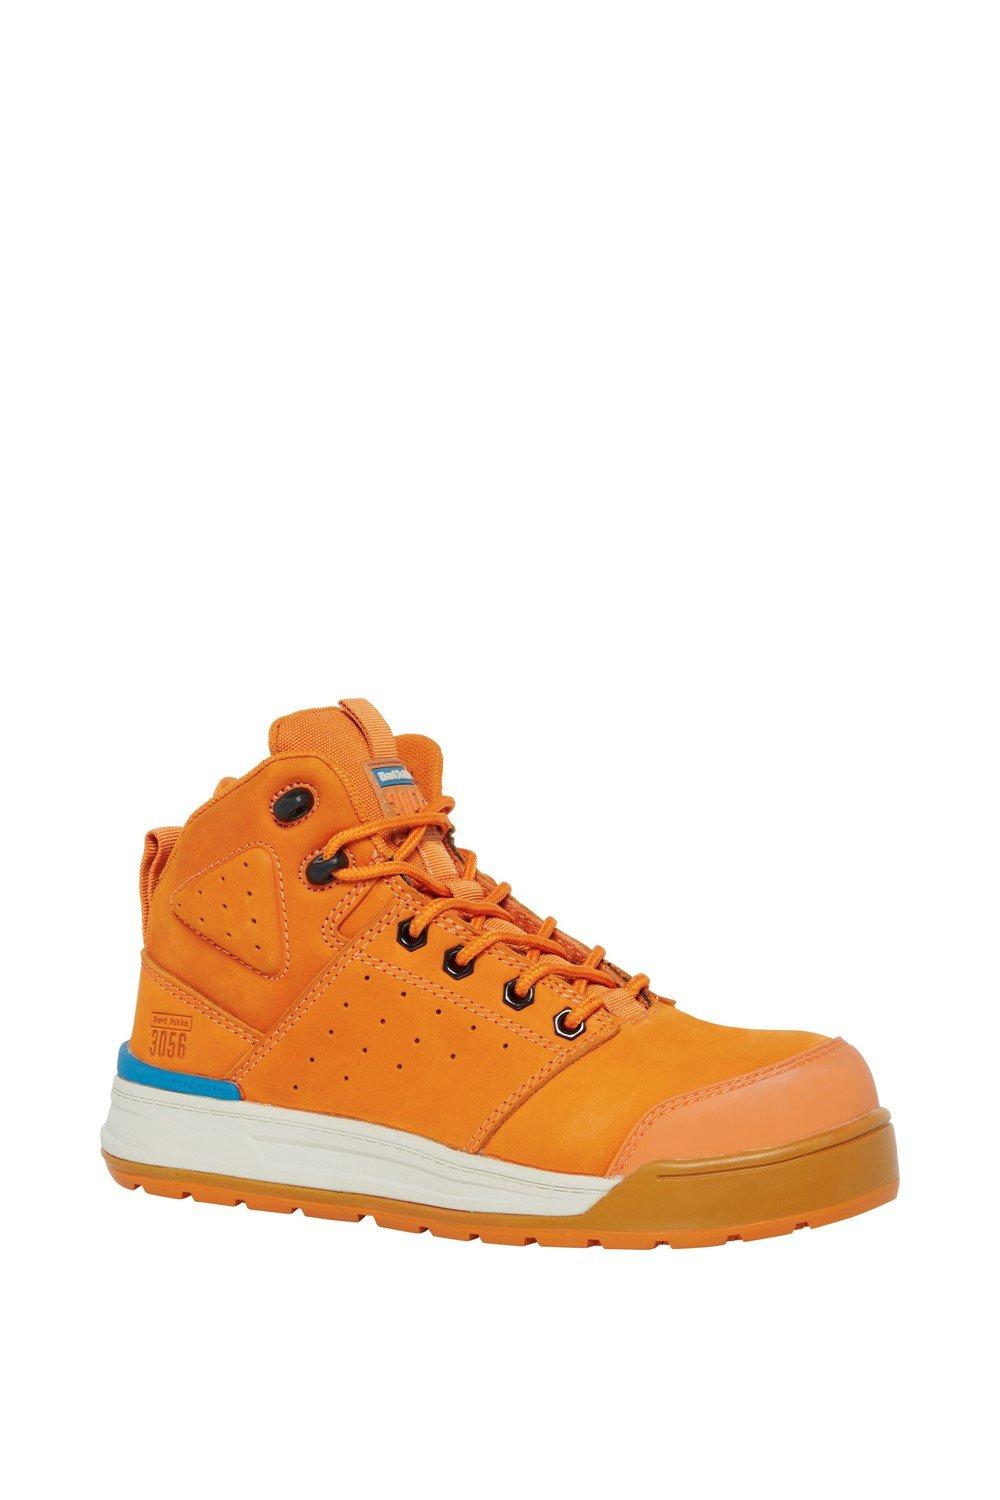 3056 PR Защитные ботинки с боковой молнией Hard Yakka, оранжевый цена и фото